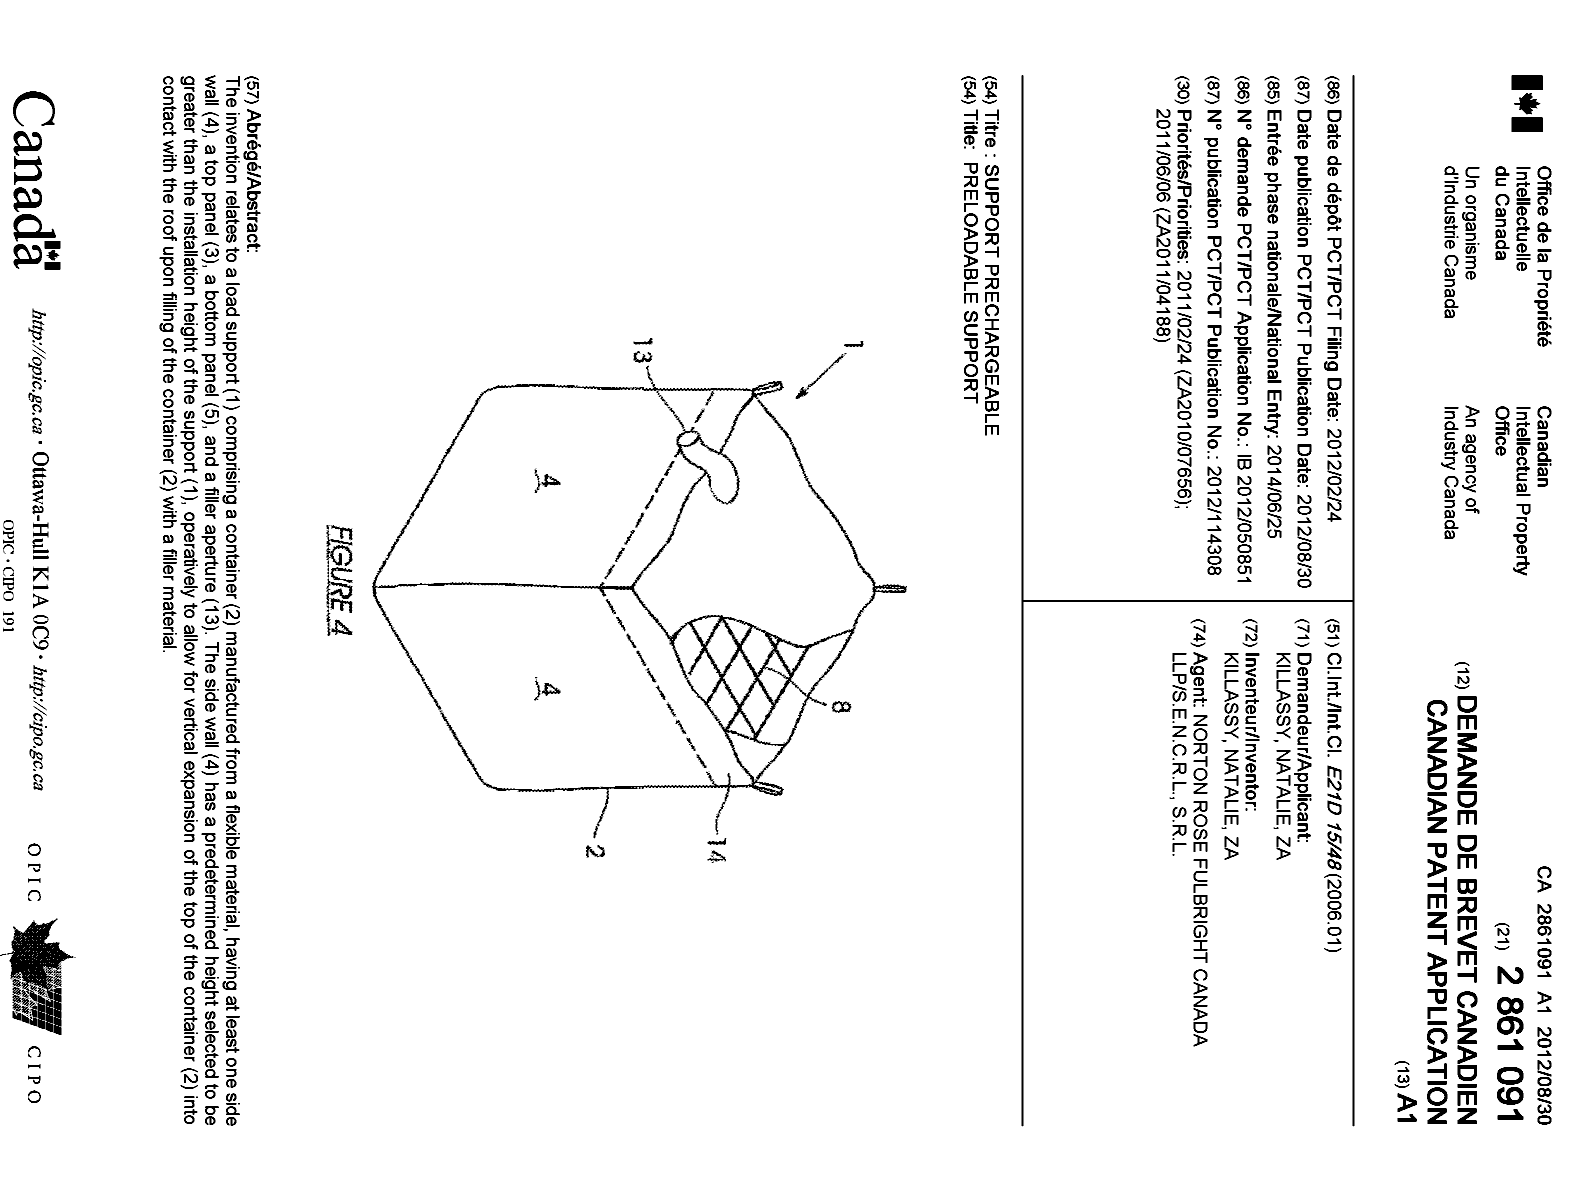 Document de brevet canadien 2861091. Page couverture 20140919. Image 1 de 1